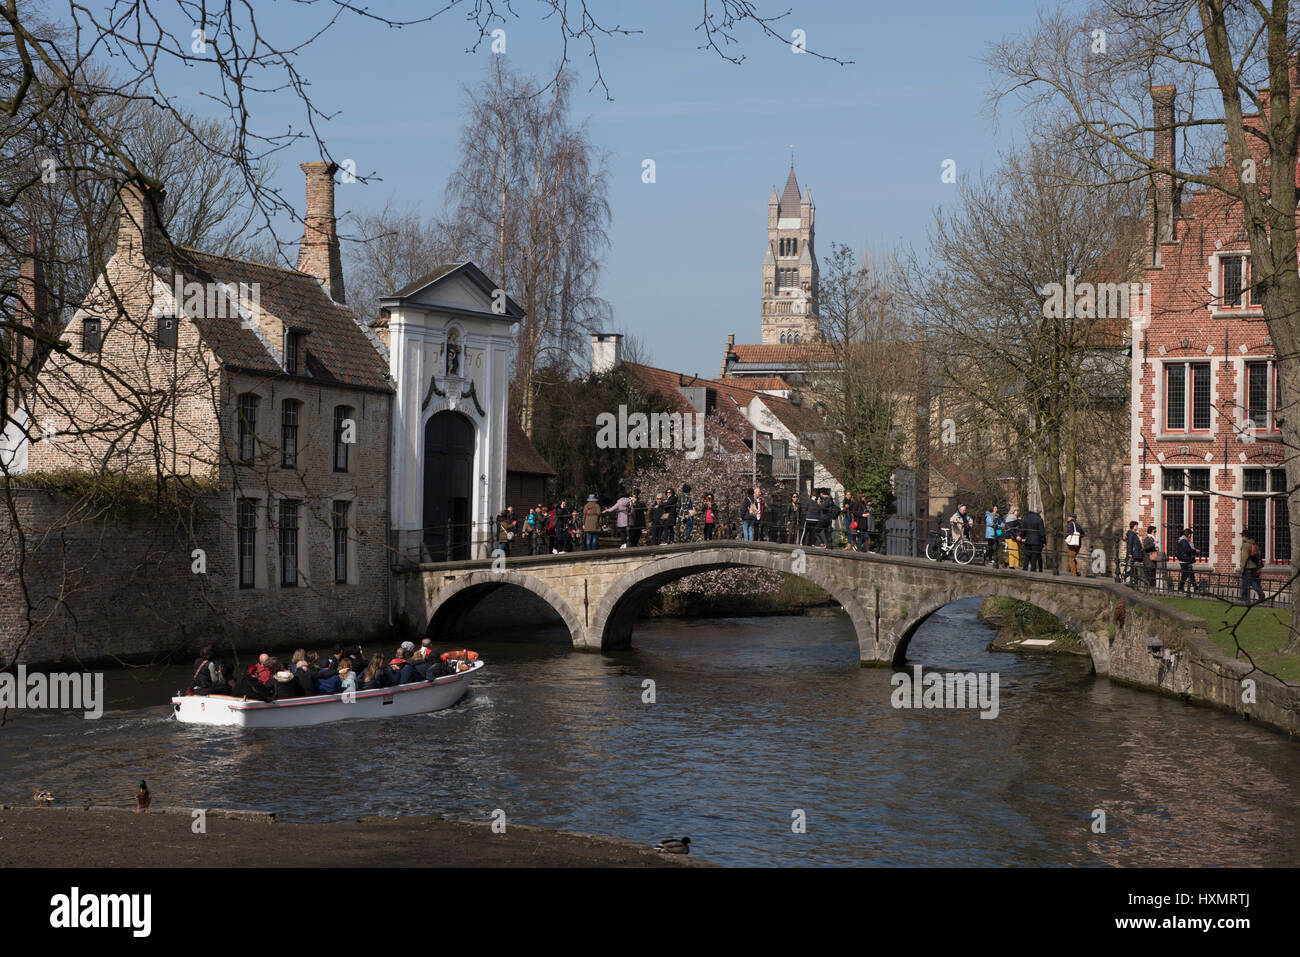 Bruges o Brugge è la capitale e la città più grande della provincia della Fiandre Occidentale nella regione fiamminga del Belgio, nel nord-ovest del paese. Foto Stock